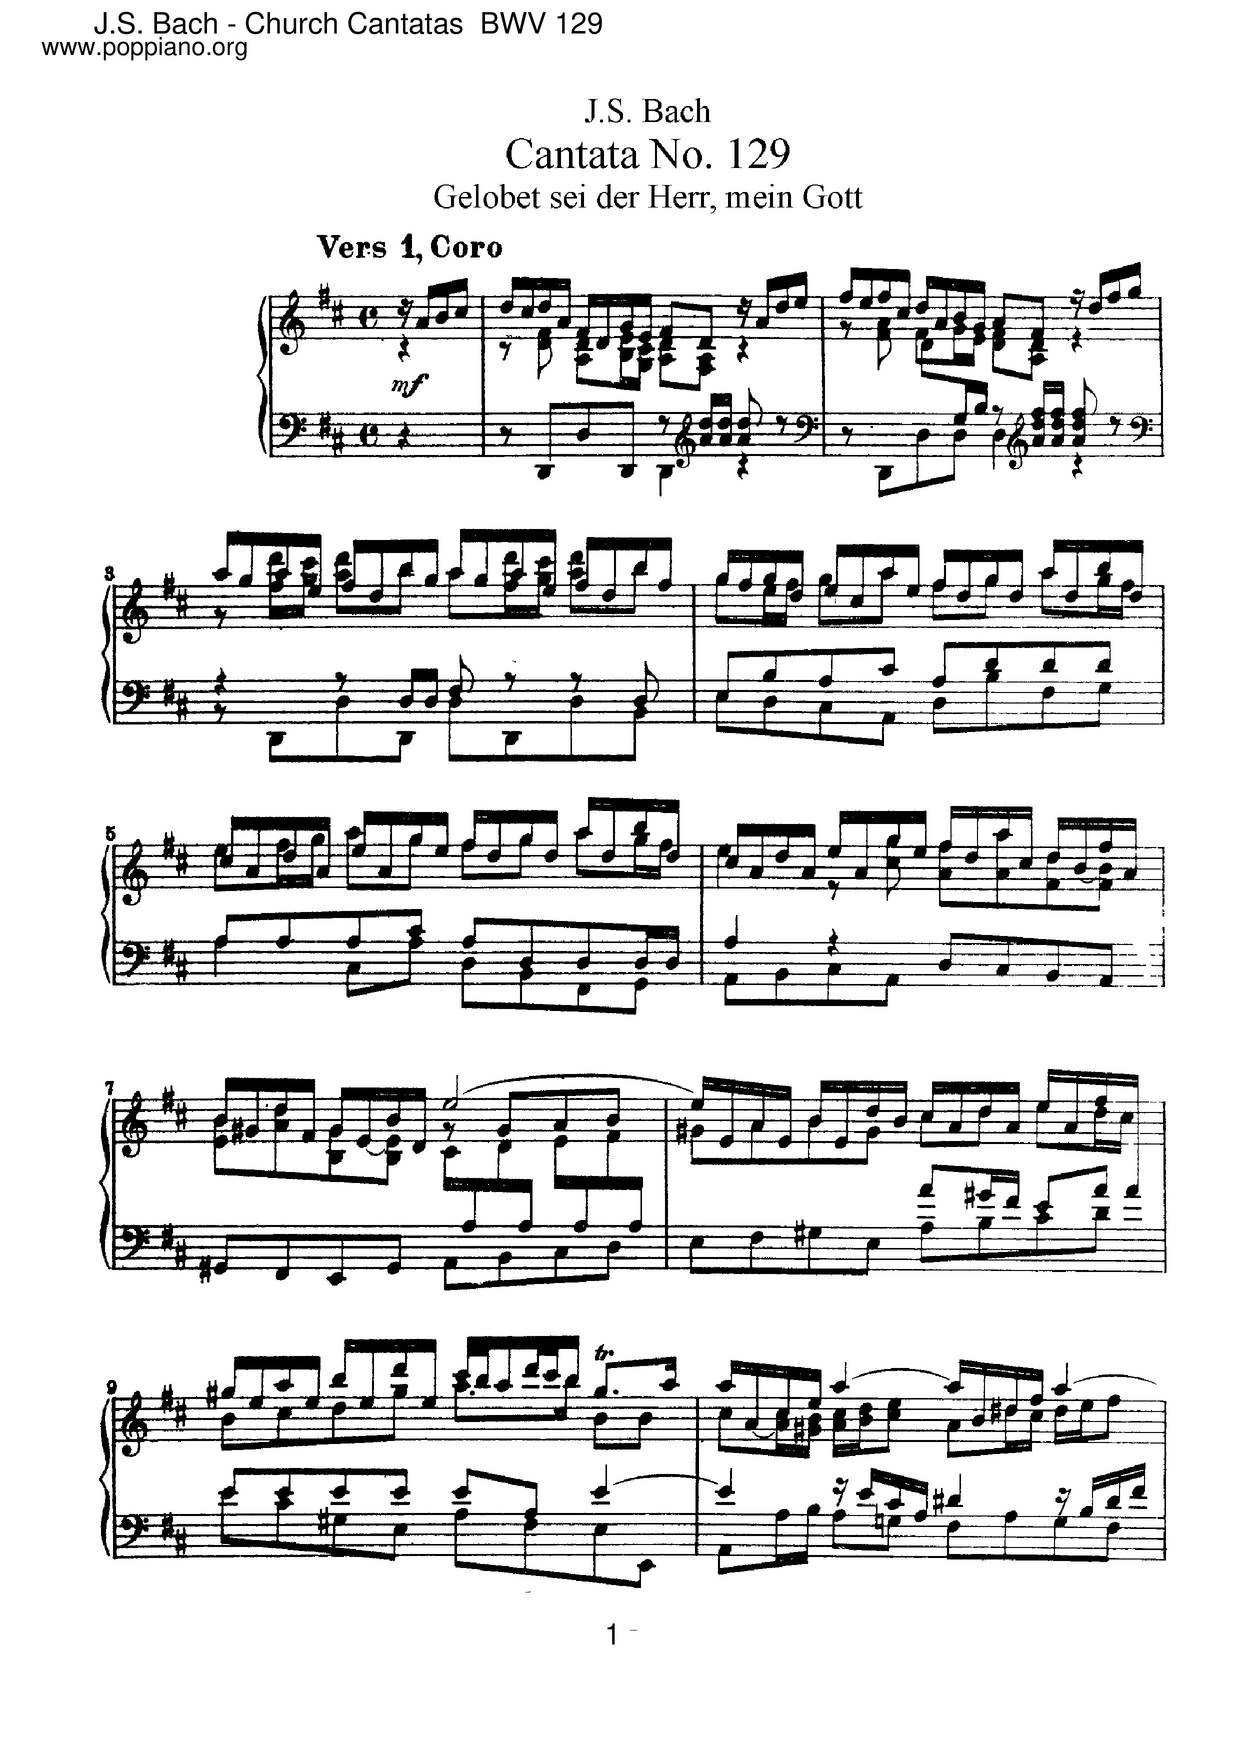 Gelobet Sei Der Herr, Mein Gott, BWV 129 Score